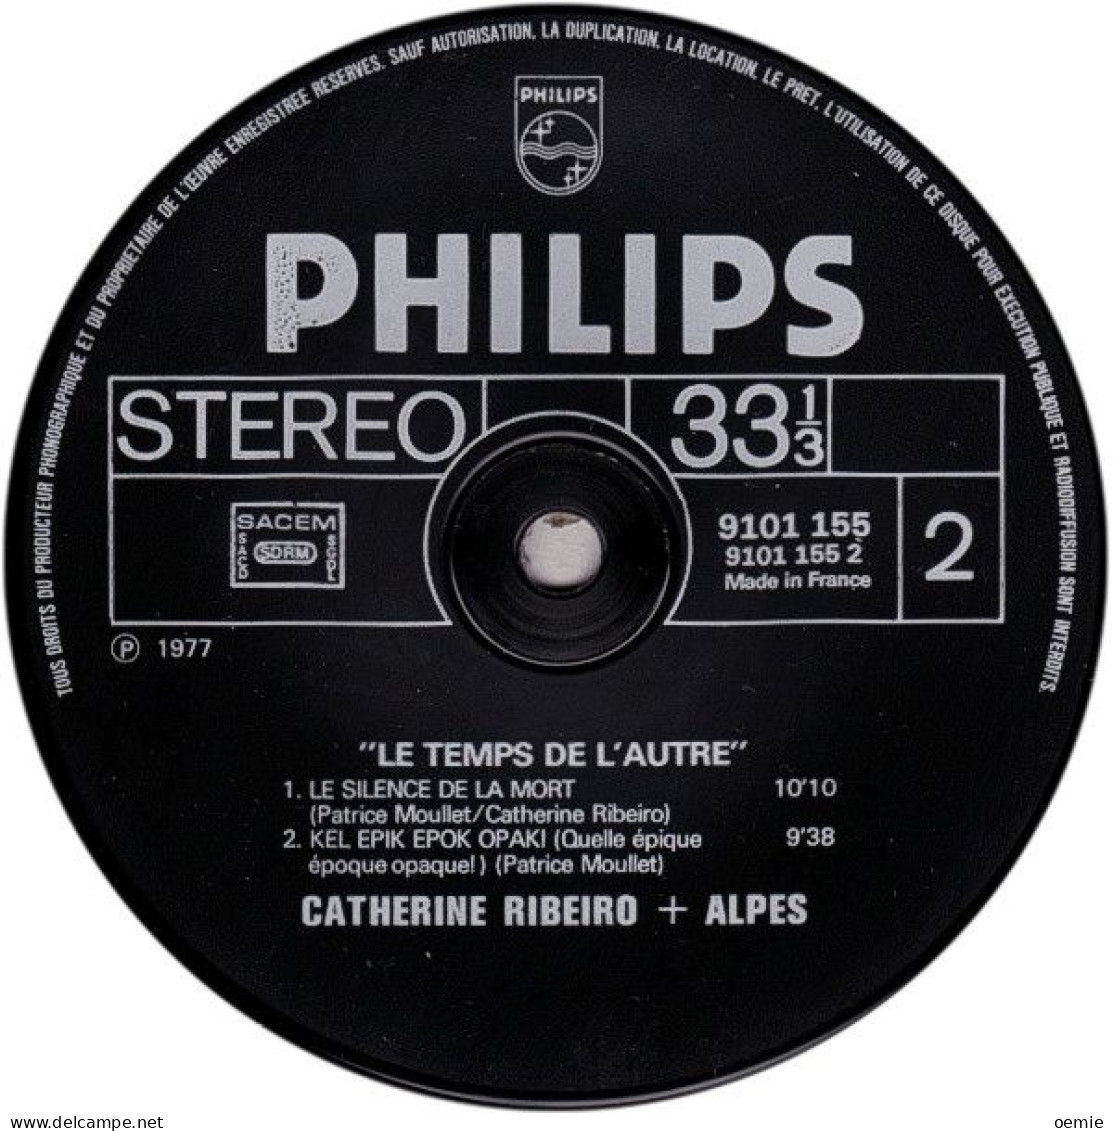 CATHERINE RIBERO + ALPES  LE TEMPS DE L'AUTRE - Other - French Music